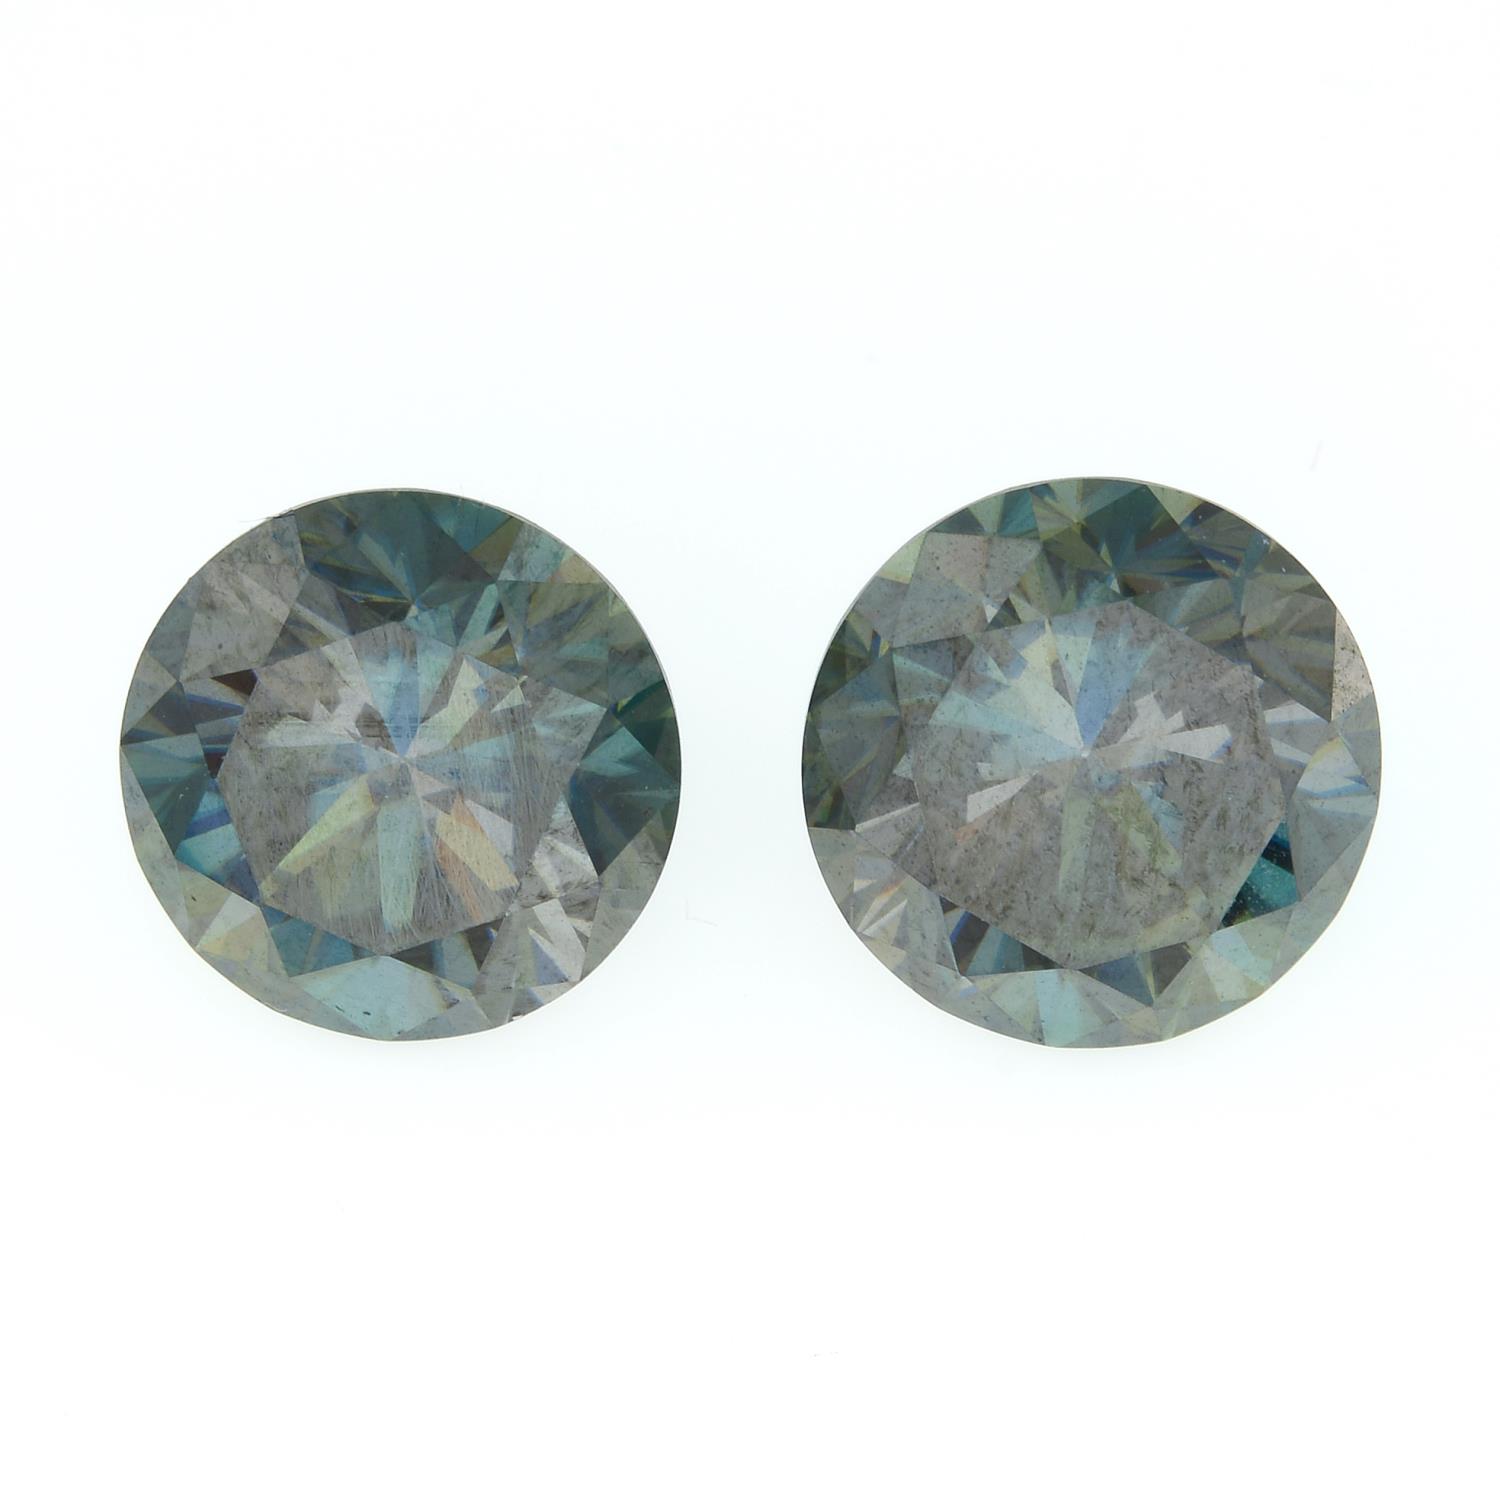 A pair of circular-shape blue moissanite.